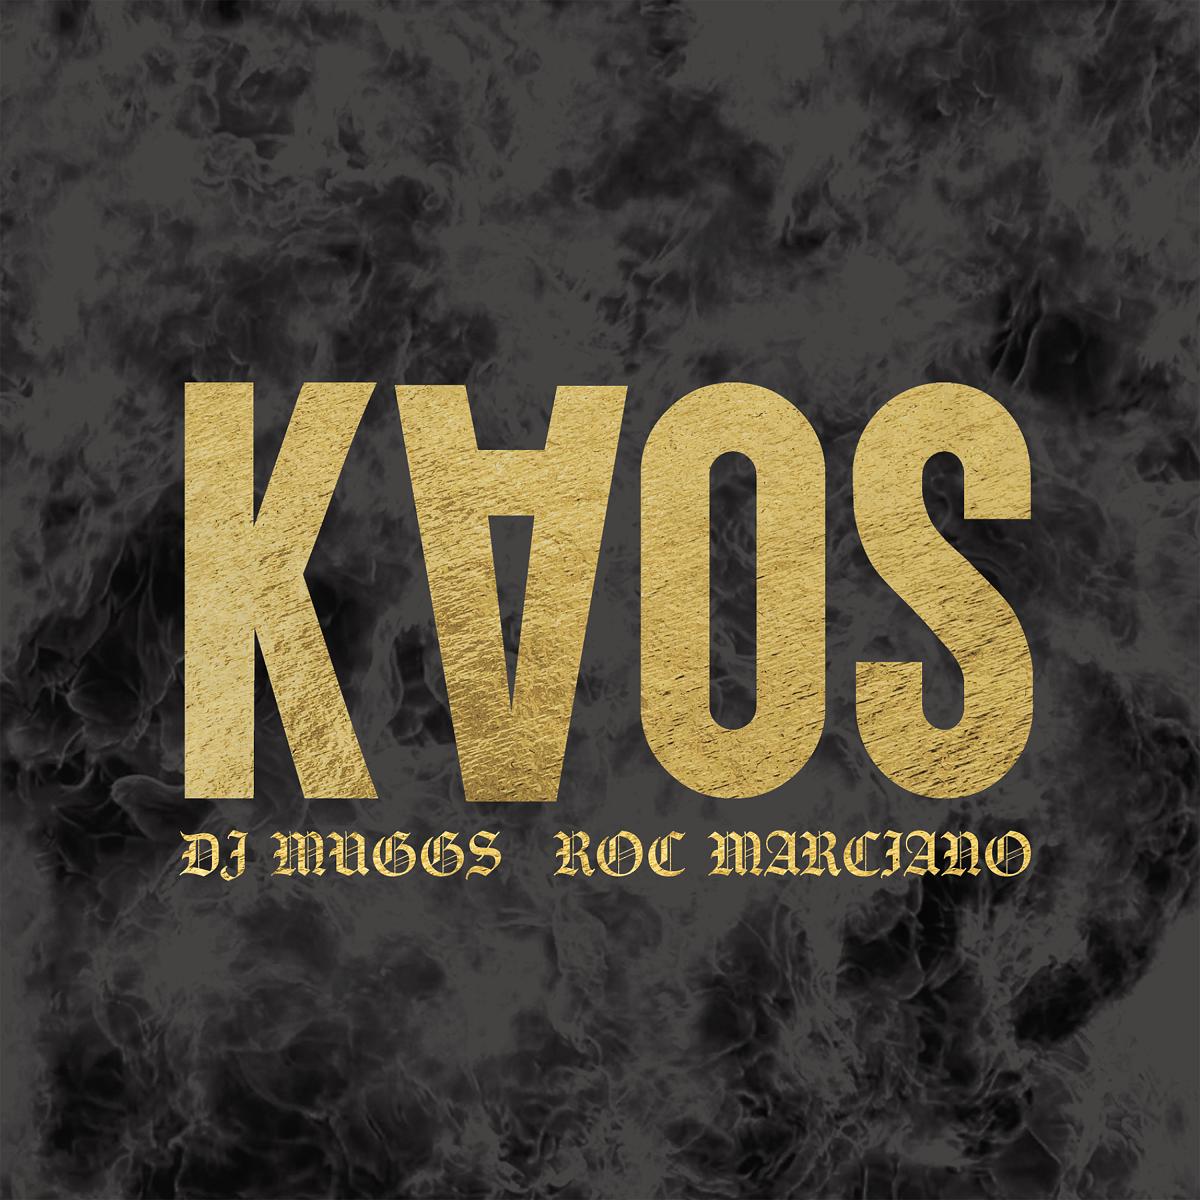 DJ MUGGS x ROC MARCIANO / DJマグス x ロック・マルシアーノ / KAOS "CD"